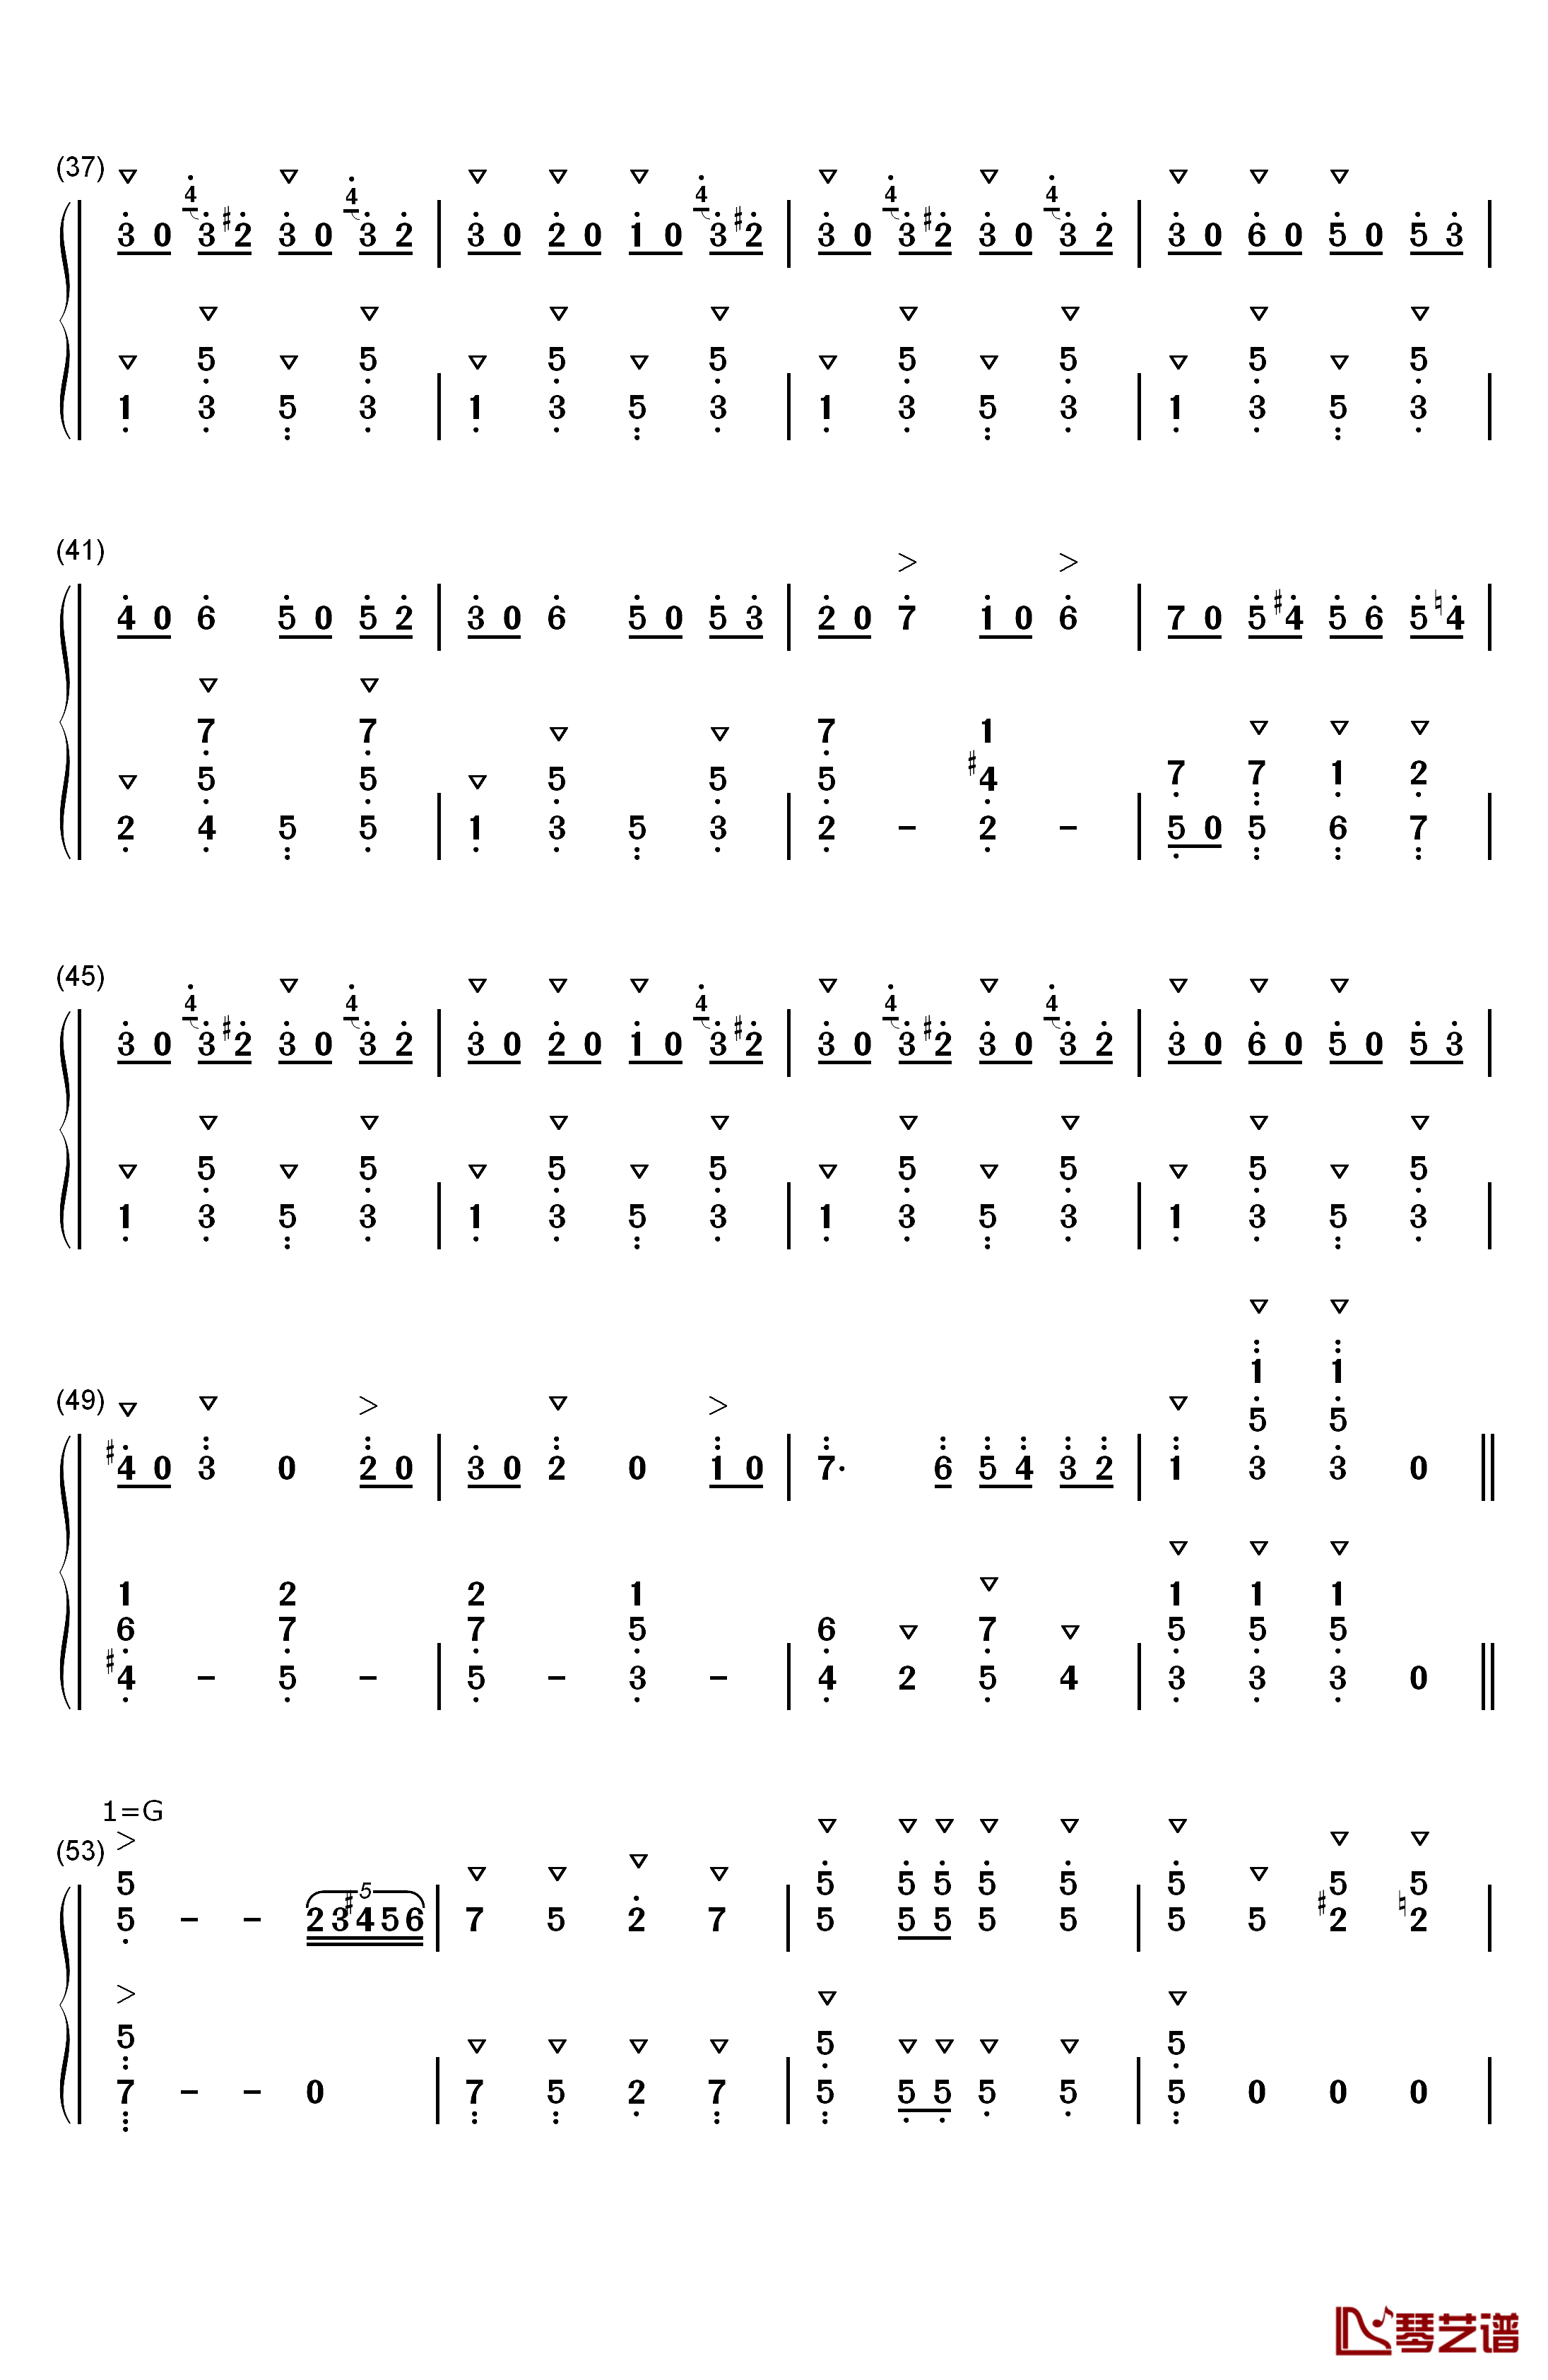 拉德斯基进行曲钢琴简谱-数字双手-约翰·施特劳斯  Johann Strauss Sr.3